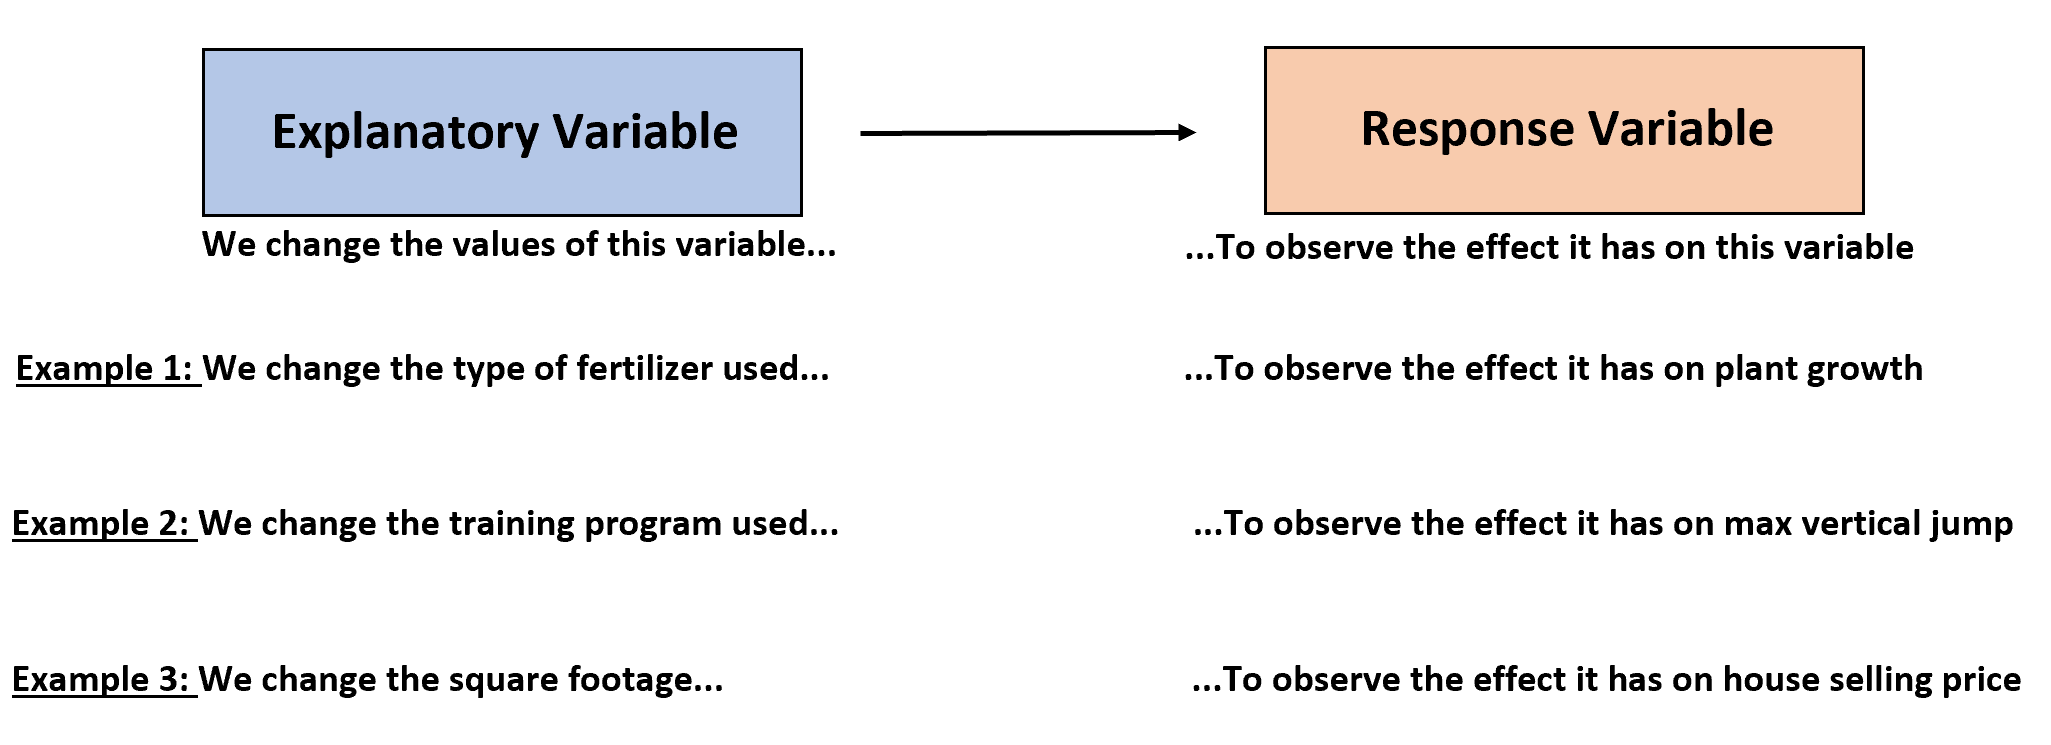 Perbedaan antara variabel penjelas dan respon